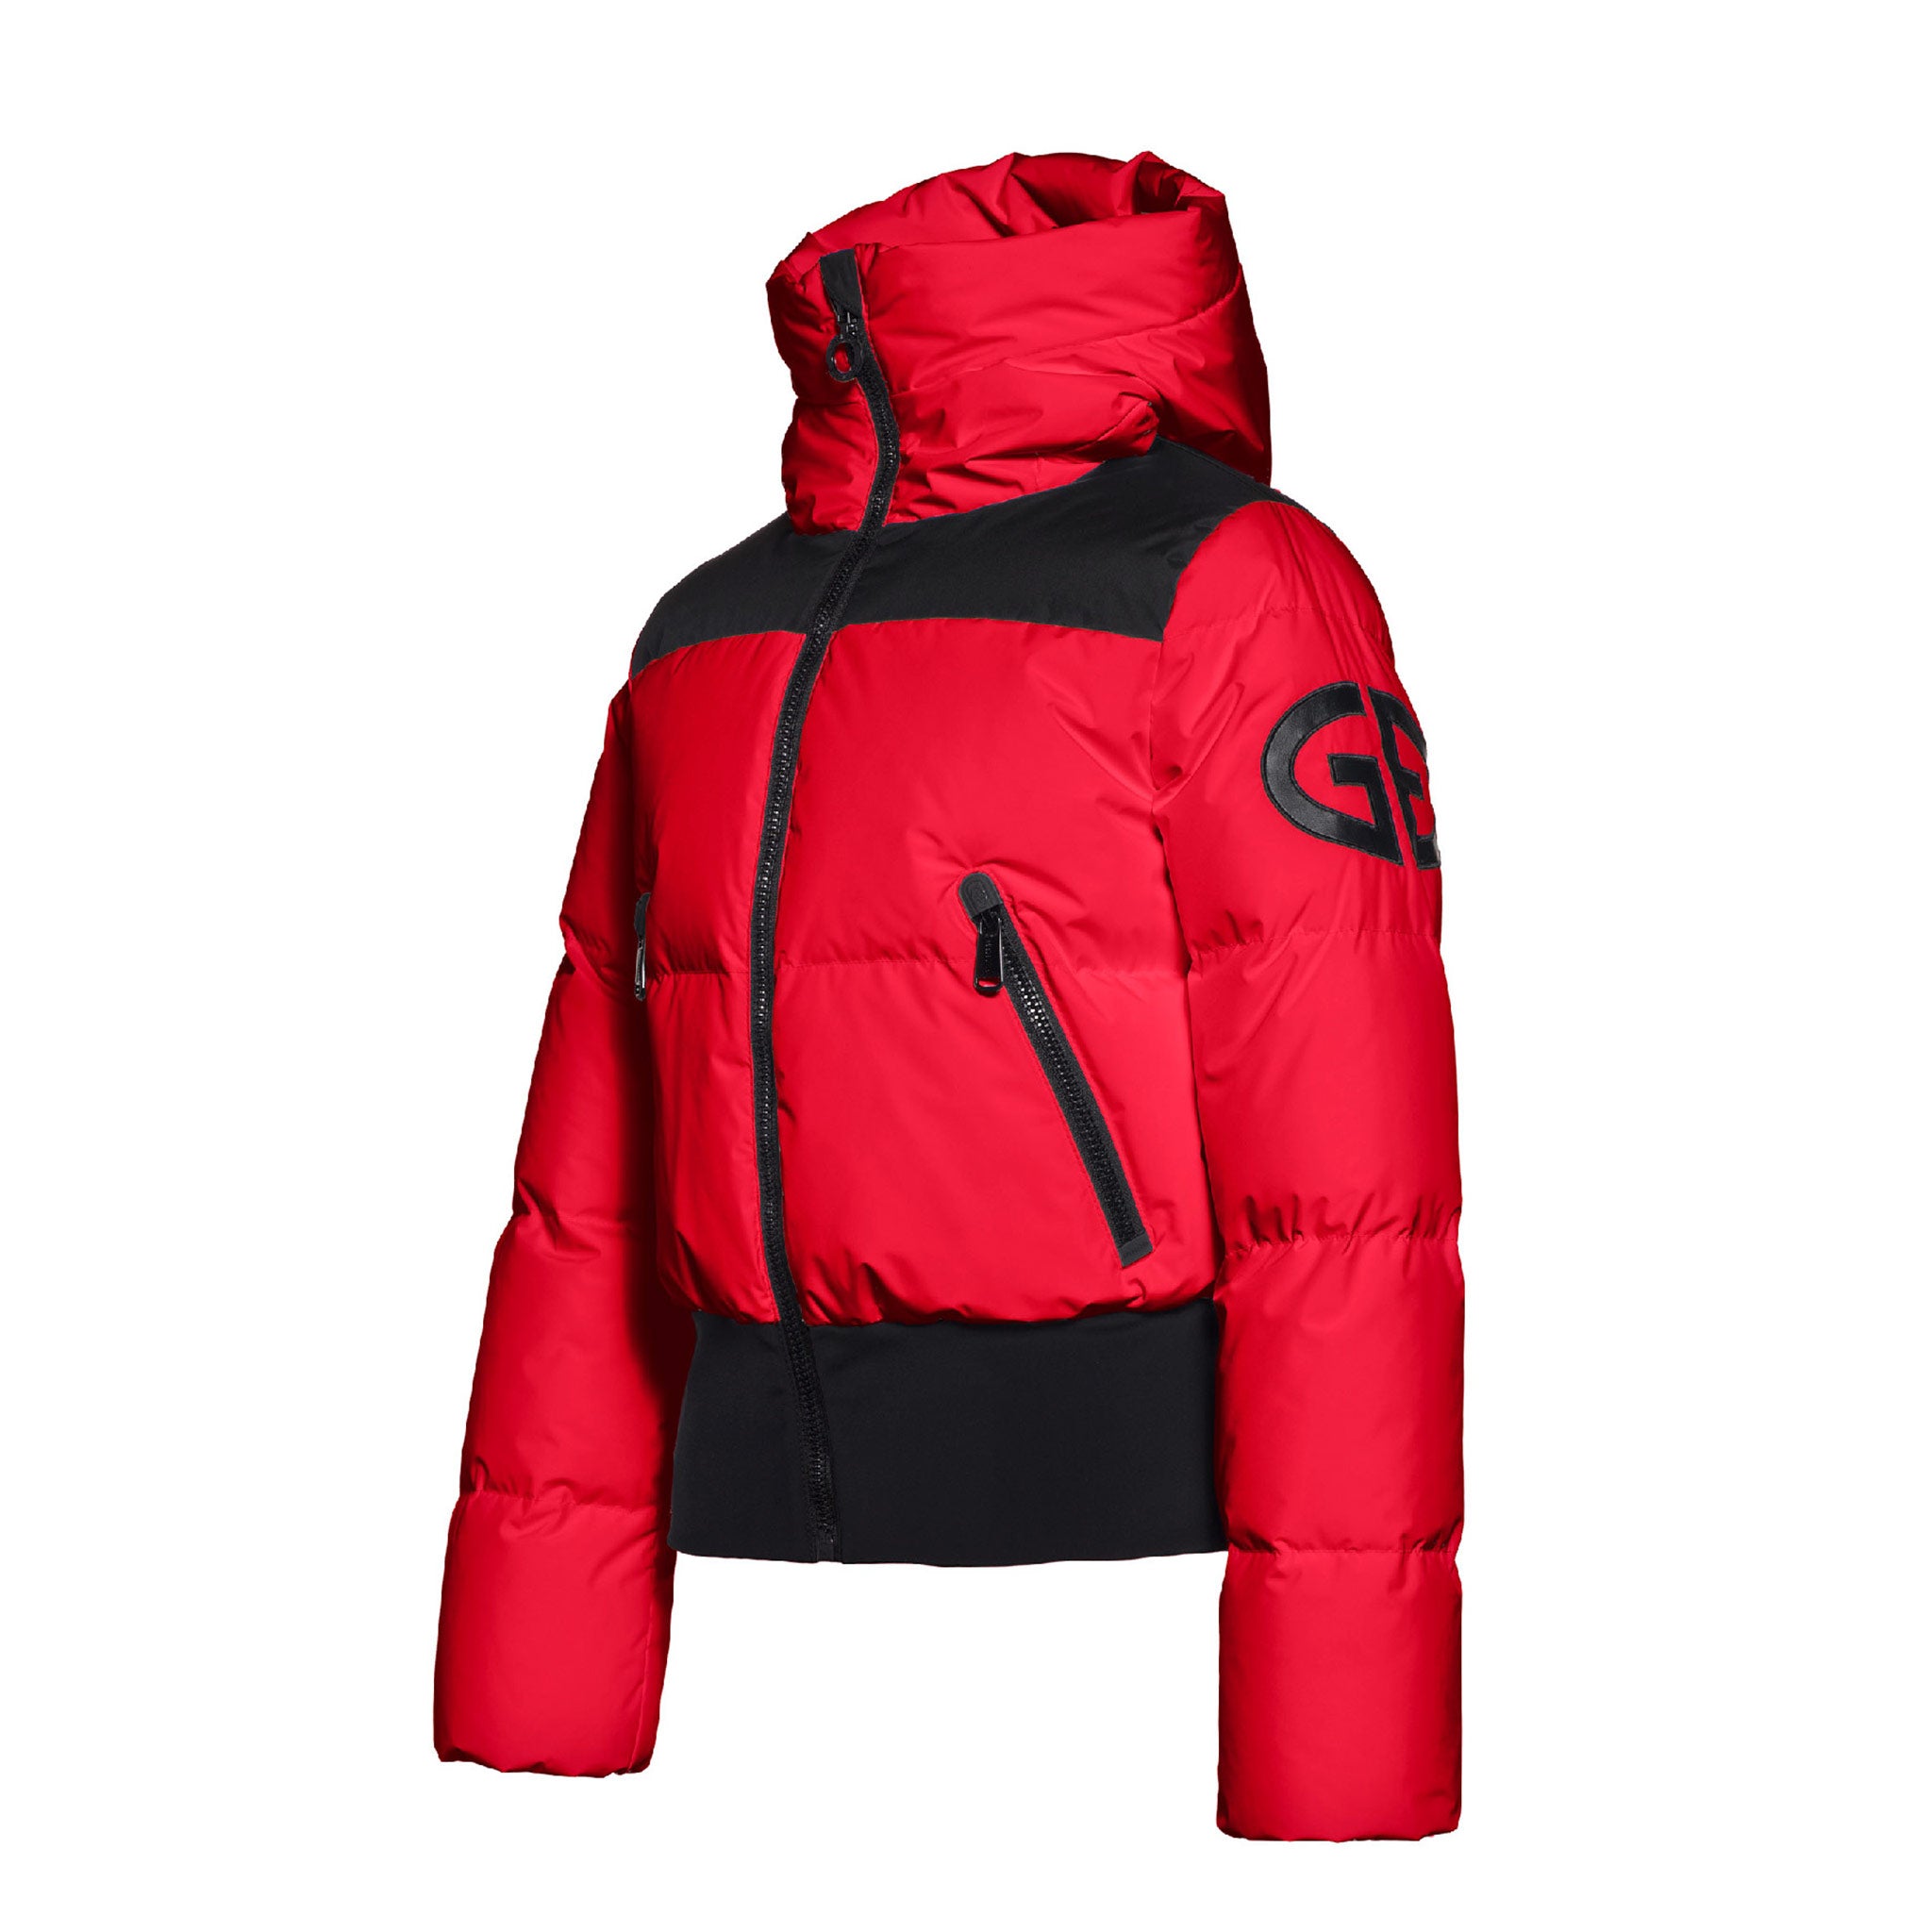 Boulder Ski Jacket in Ruby Red